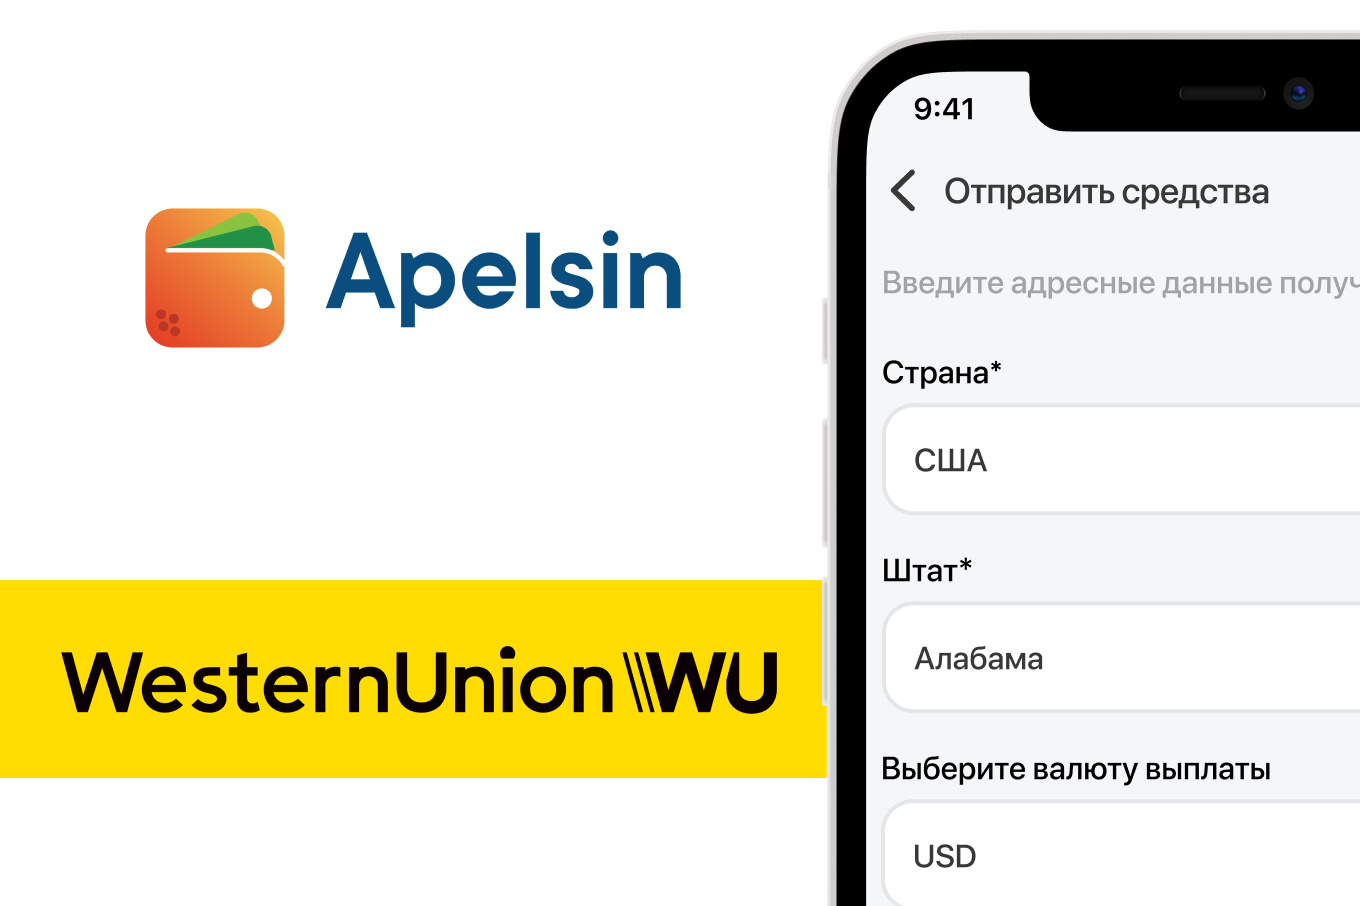 Денежные переводы Western Union стали доступны в приложении Apelsin